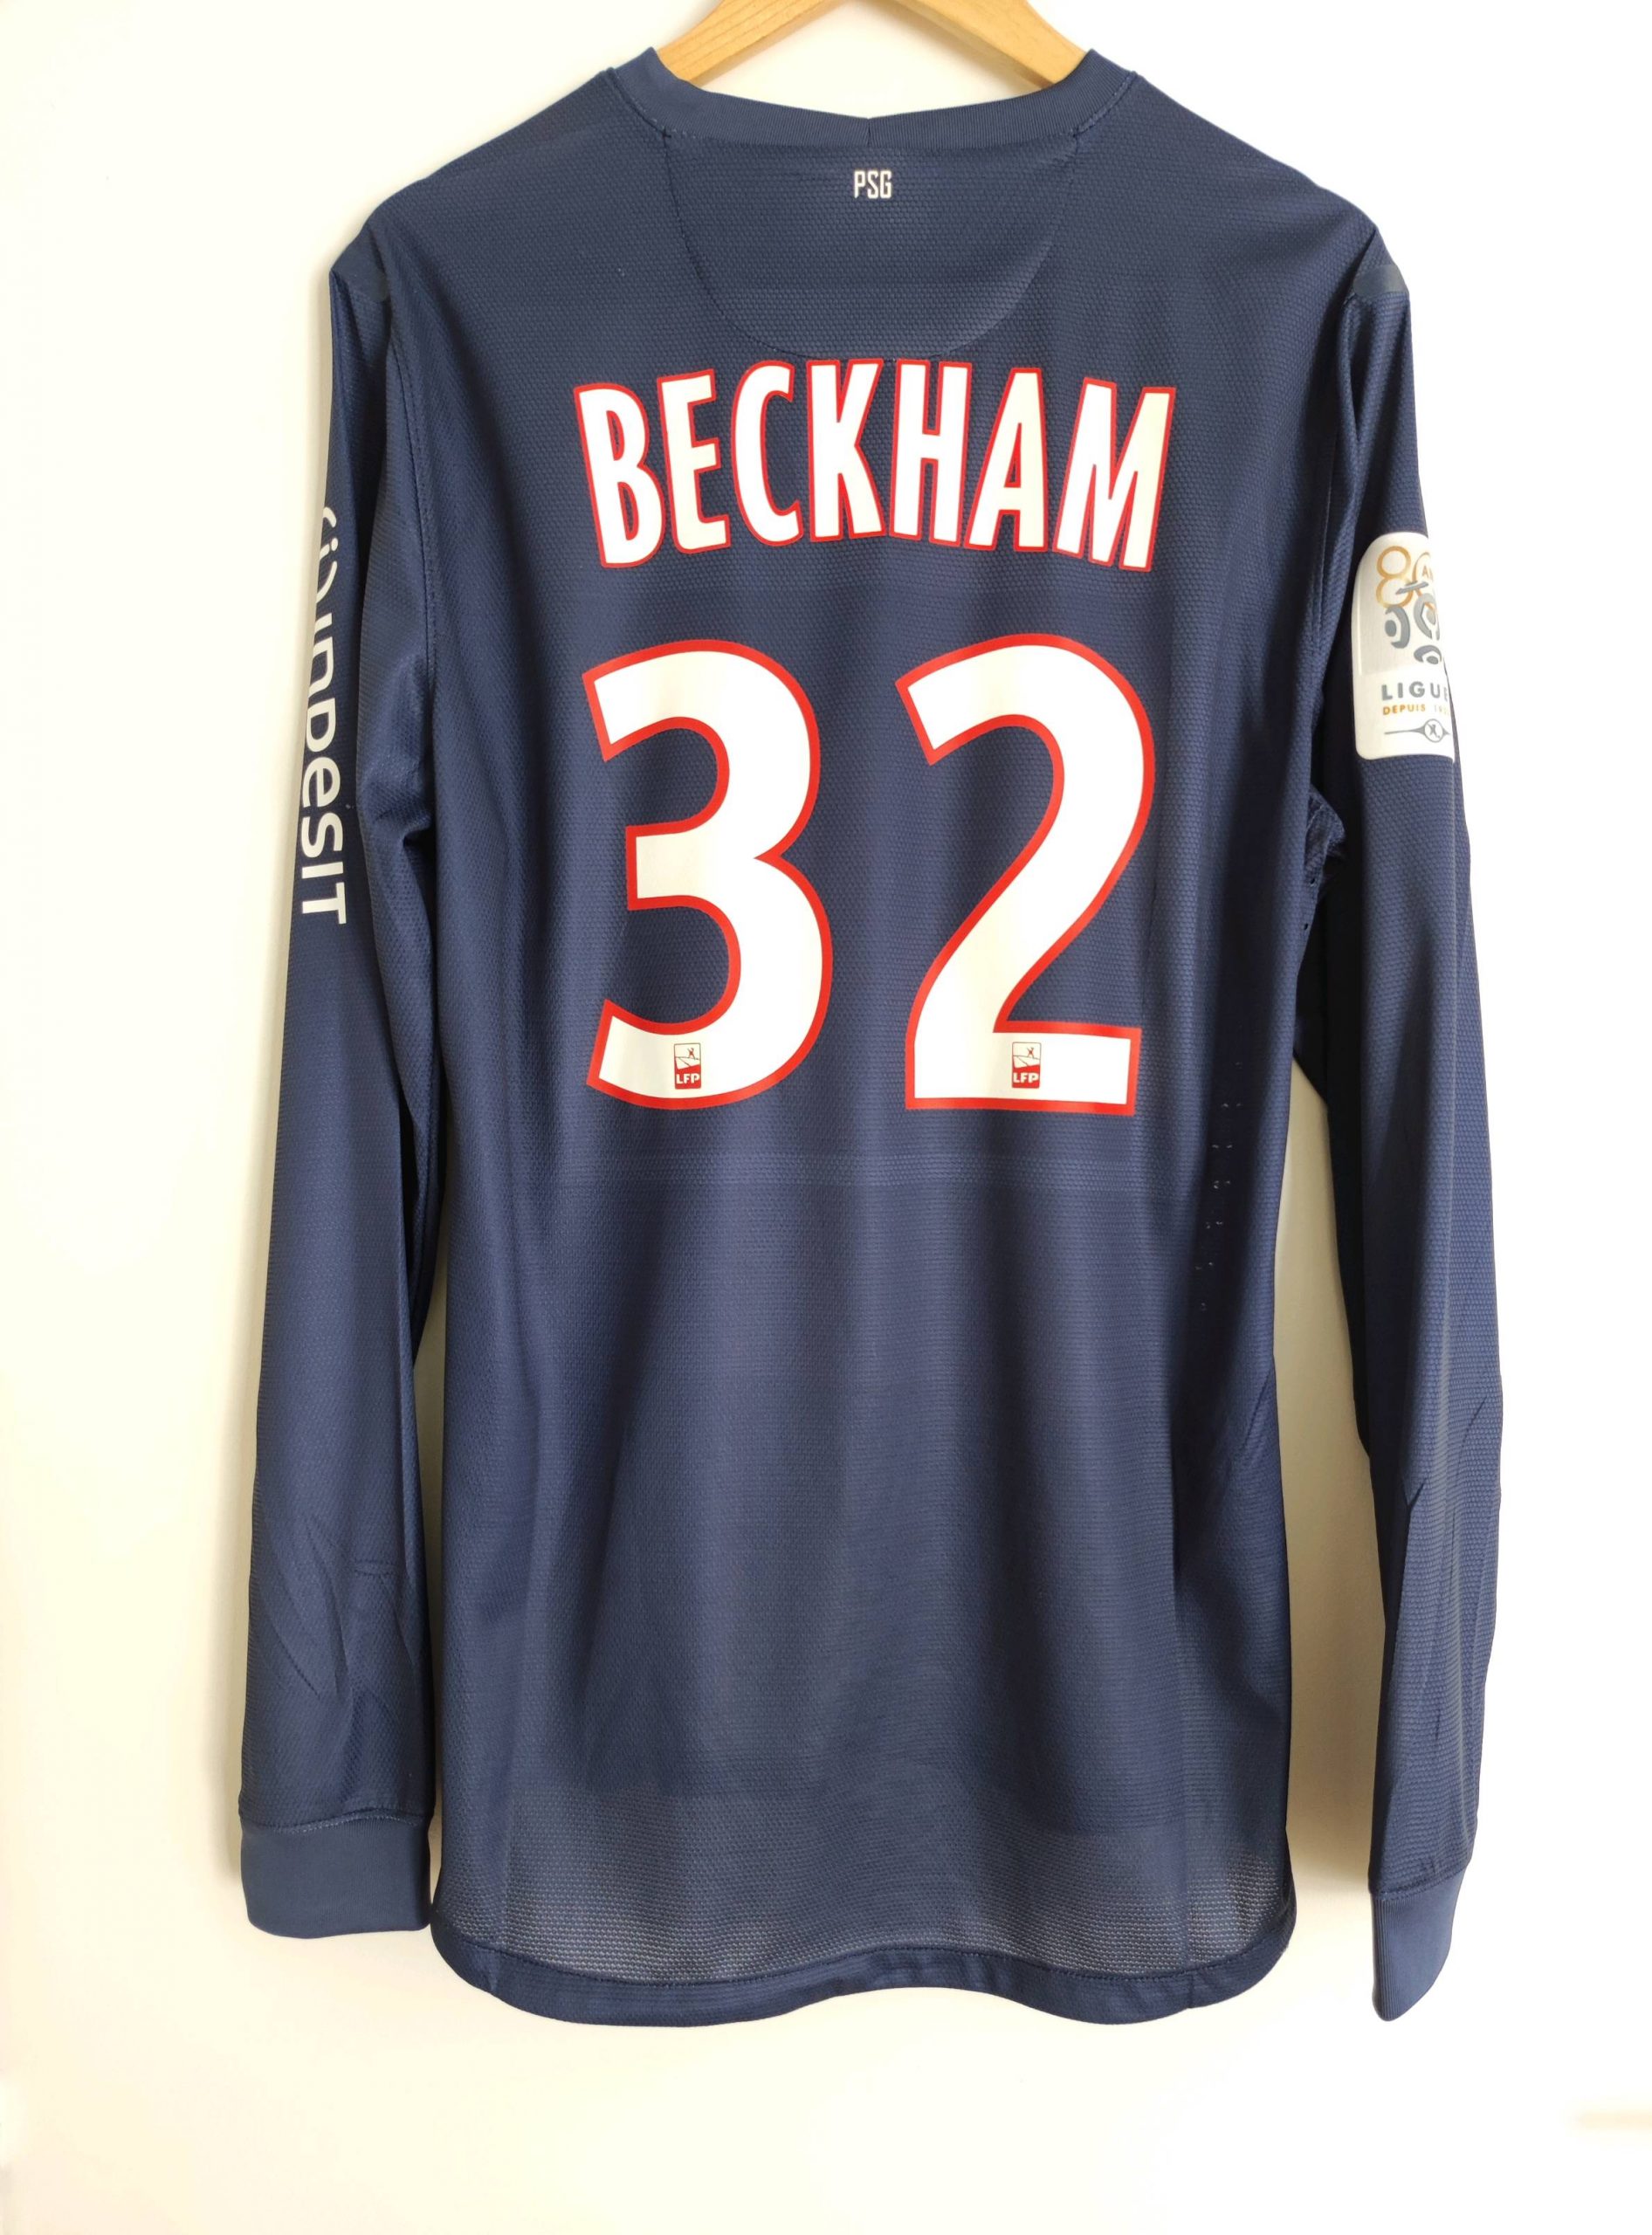 Maillot foot authentique retro et vintage - PSG domicile #32 Beckham  2012/2013 (XL)